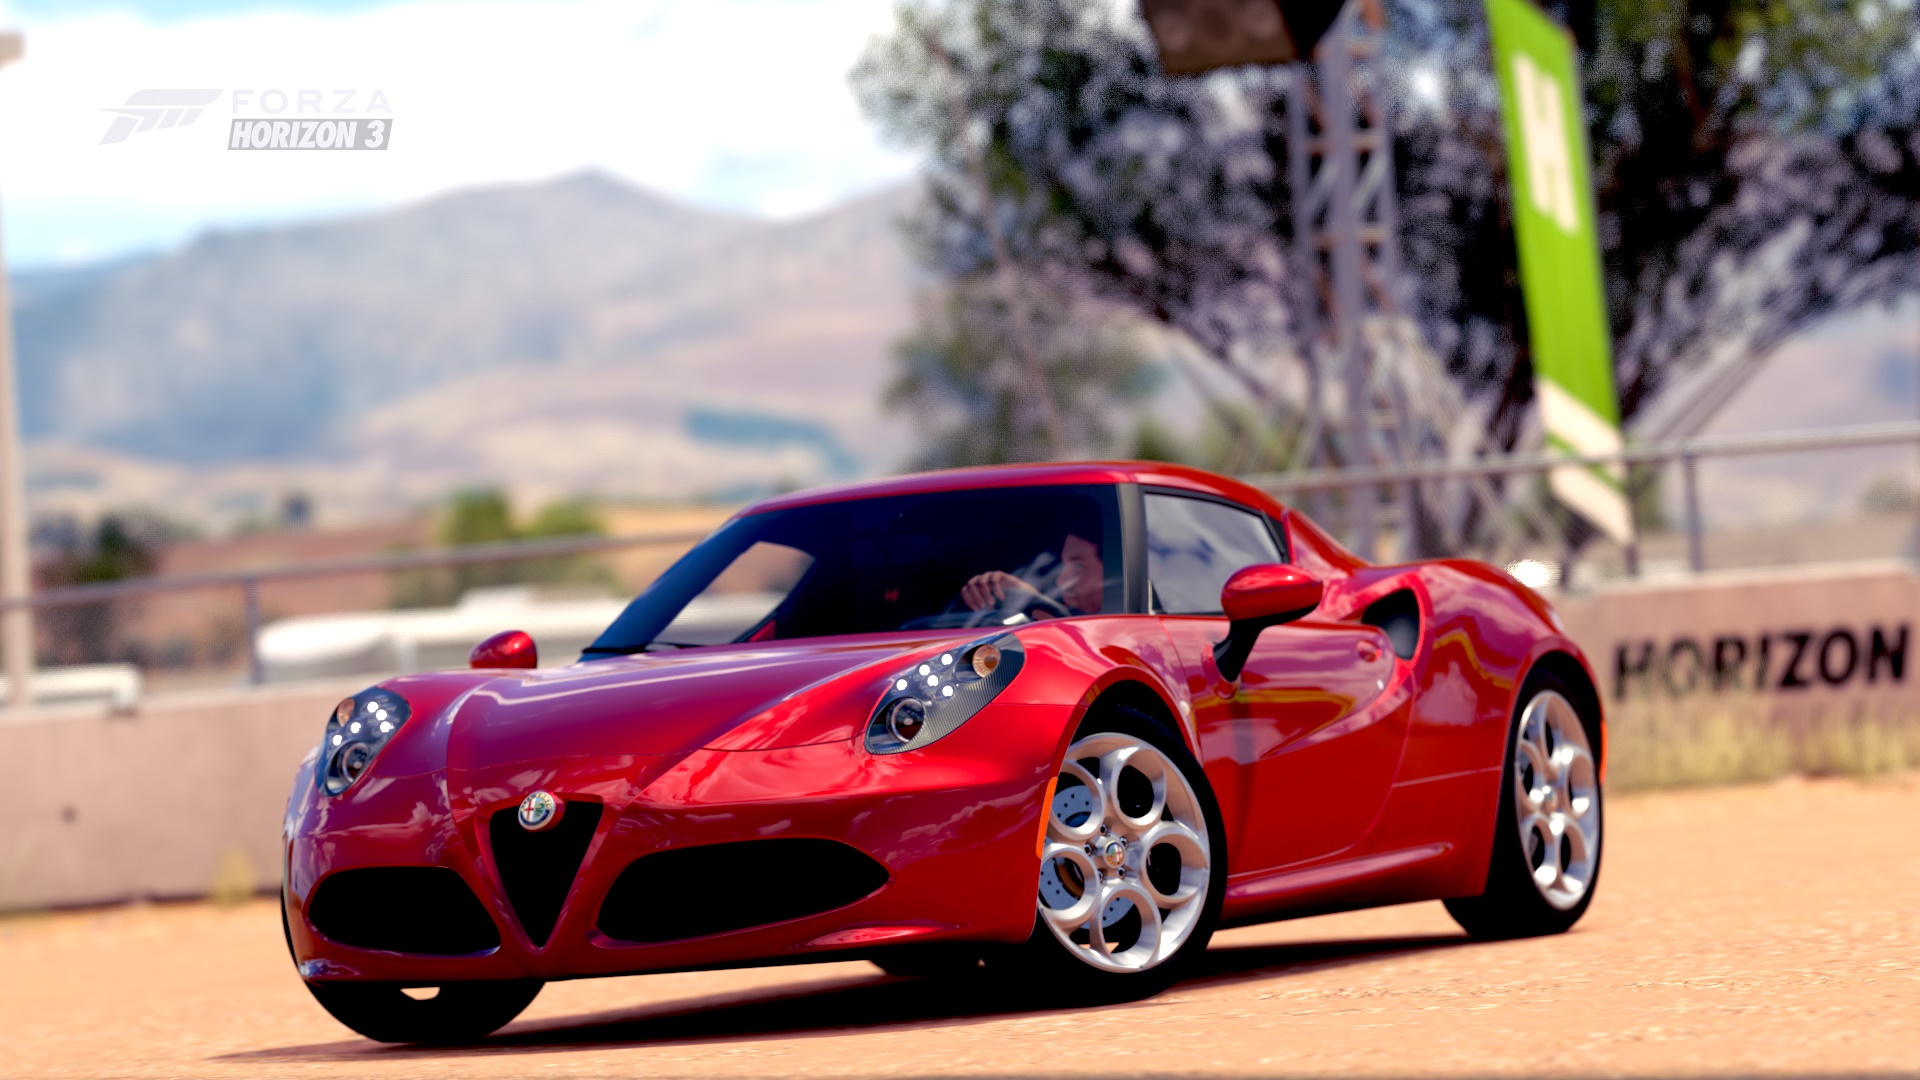 Descarga gratuita de fondo de pantalla para móvil de Alfa Romeo, Fuerza, Alfa Romeo 4C, Videojuego, Forza Horizon 3.